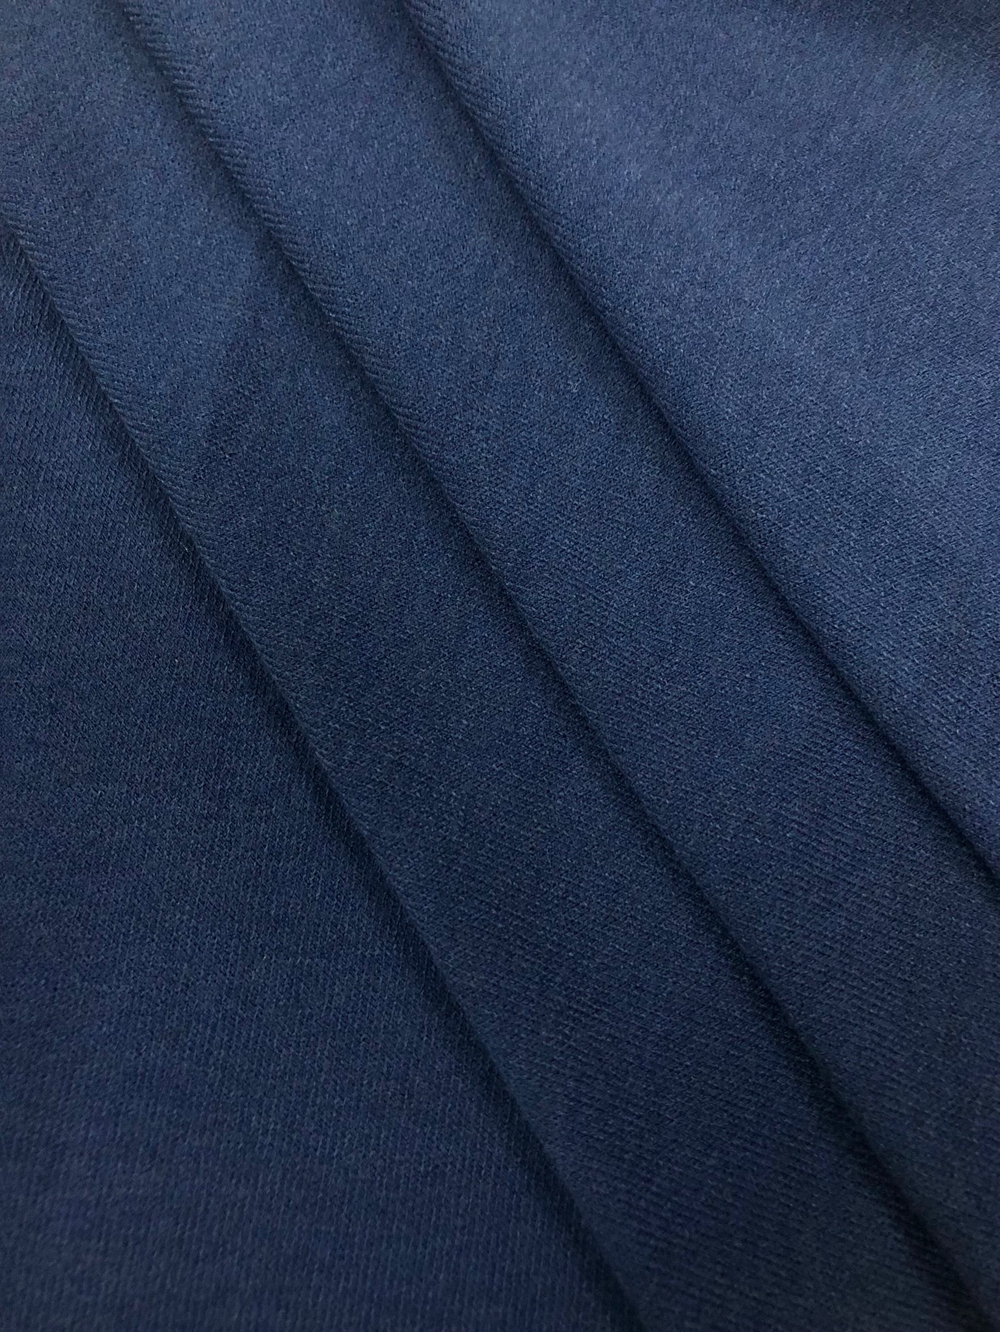 Трикотаж Ангора, цвет темно-синий, артикул 327629